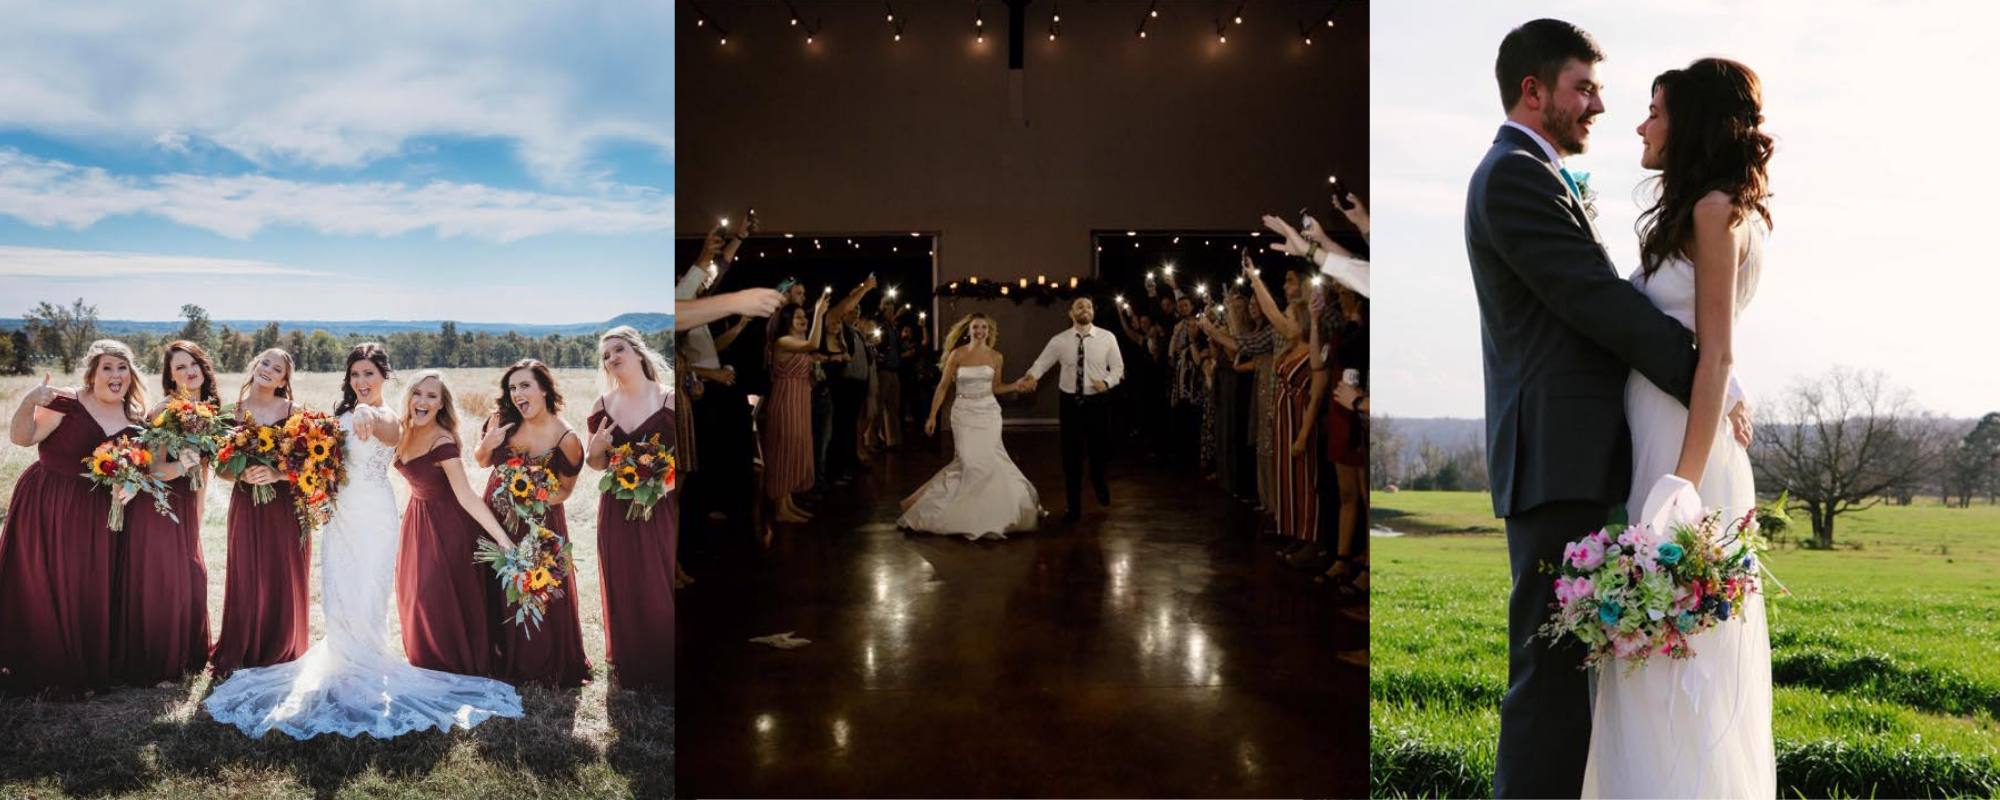 Wedding venue collage 